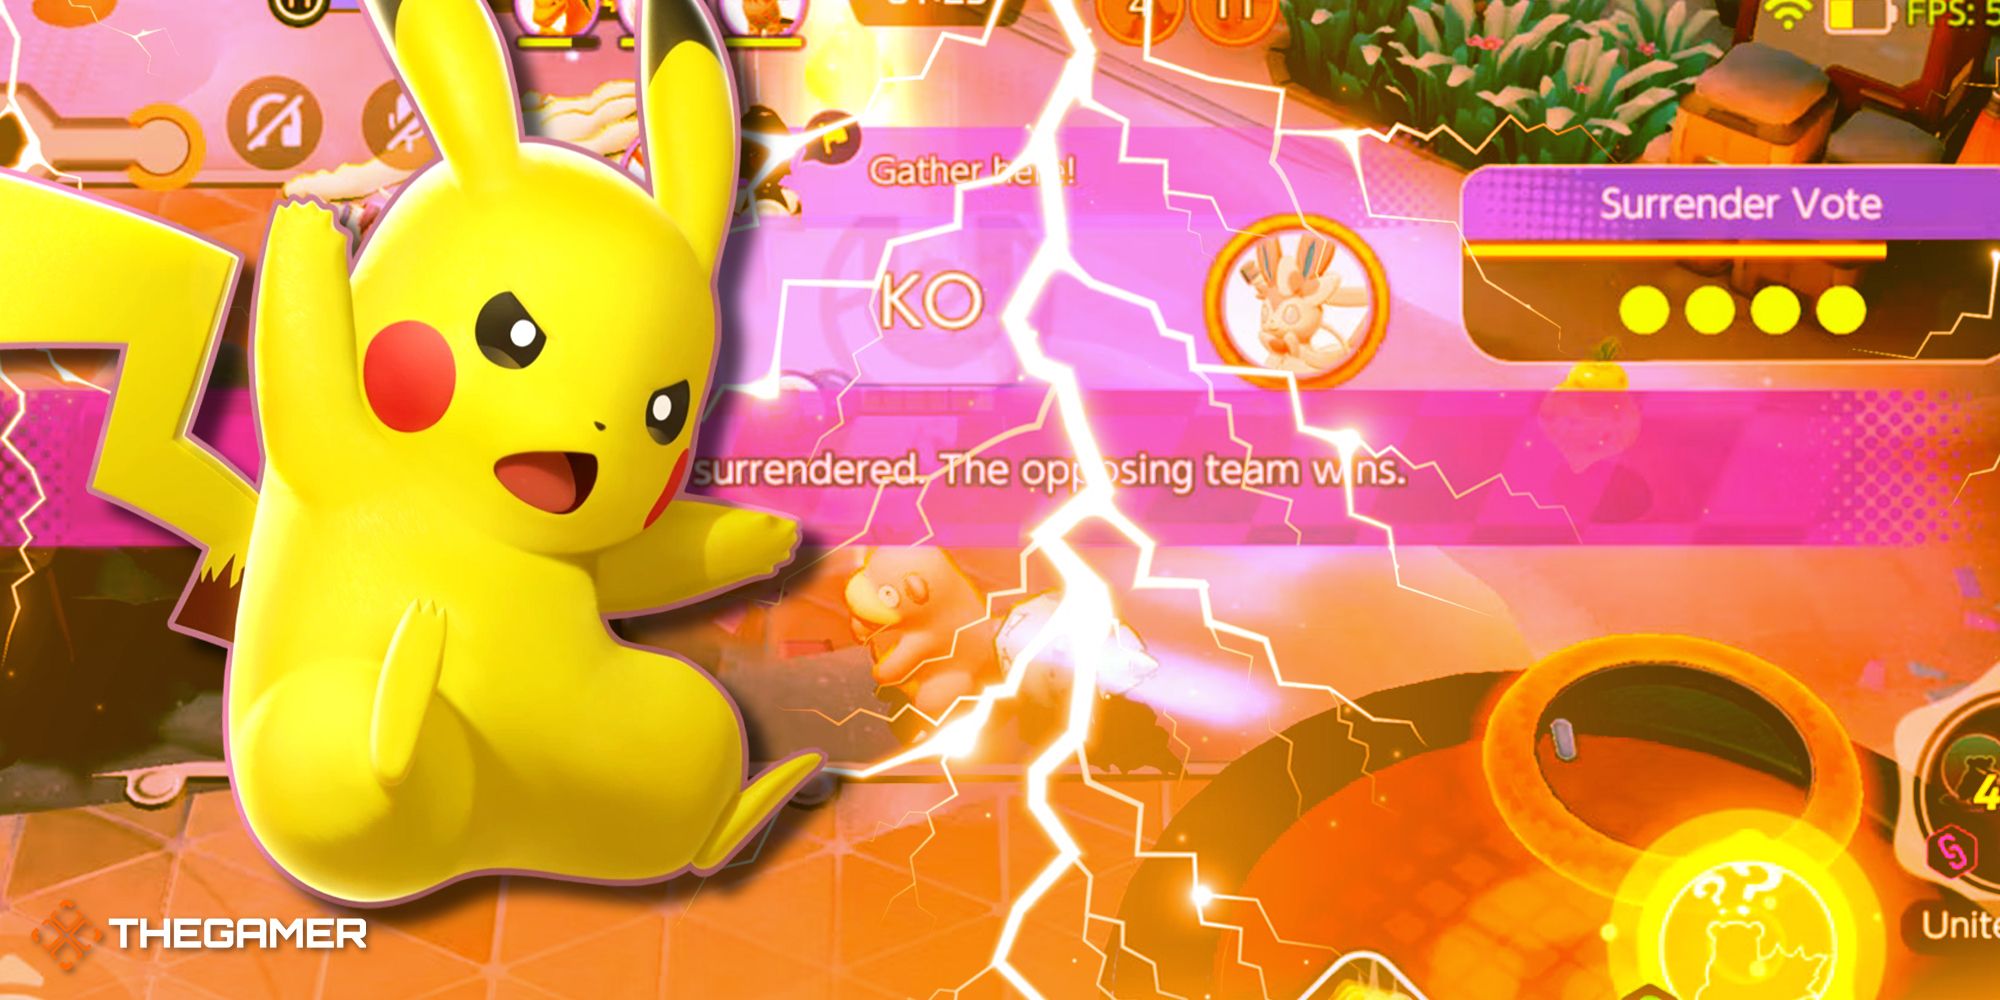 15-Pokemon Unite image that includes the Surrender Vote